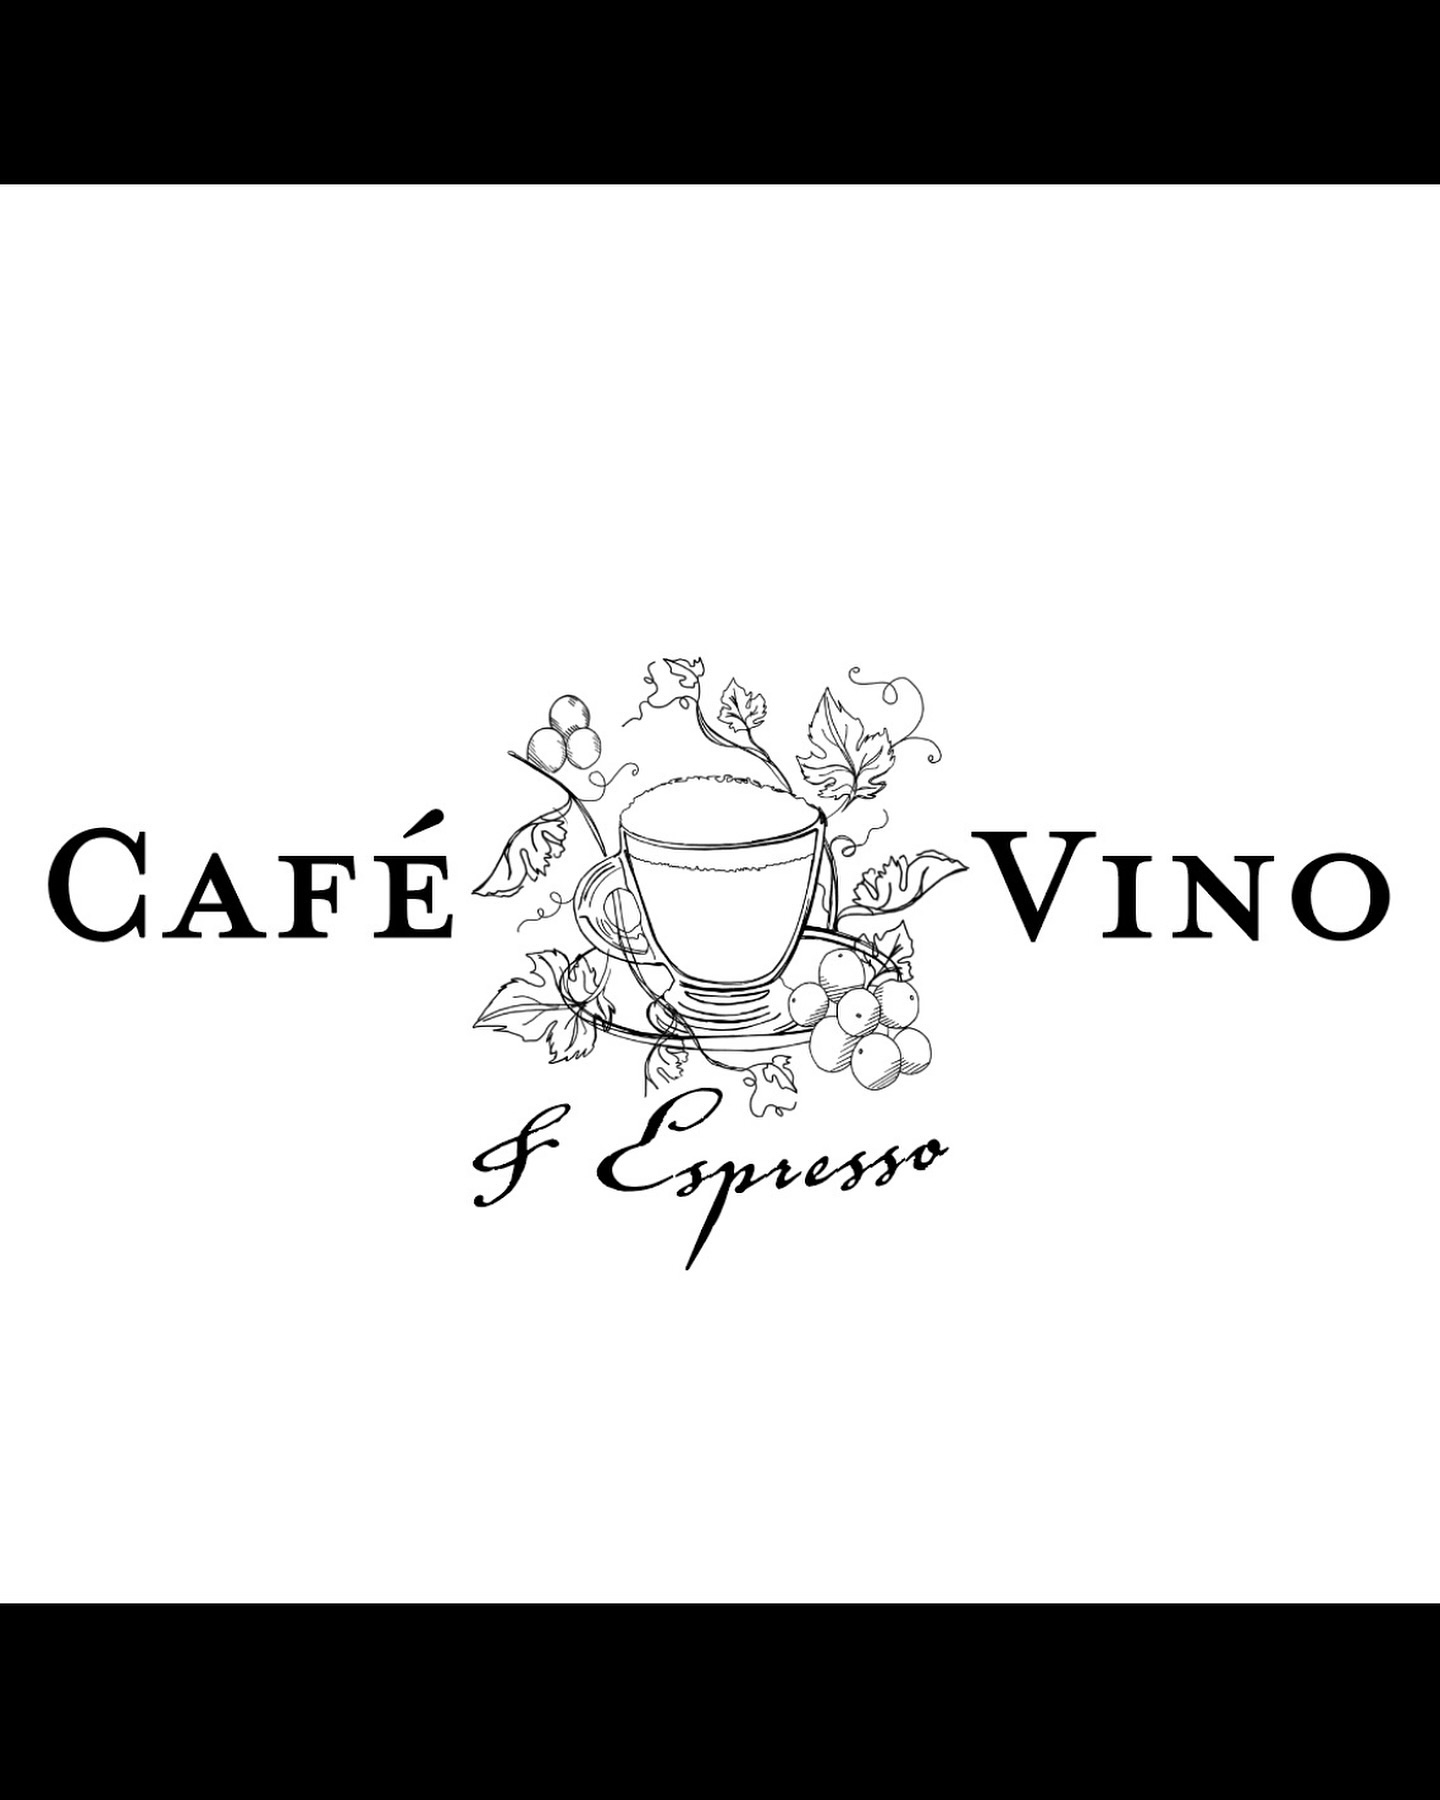 Café Vino & Espresso